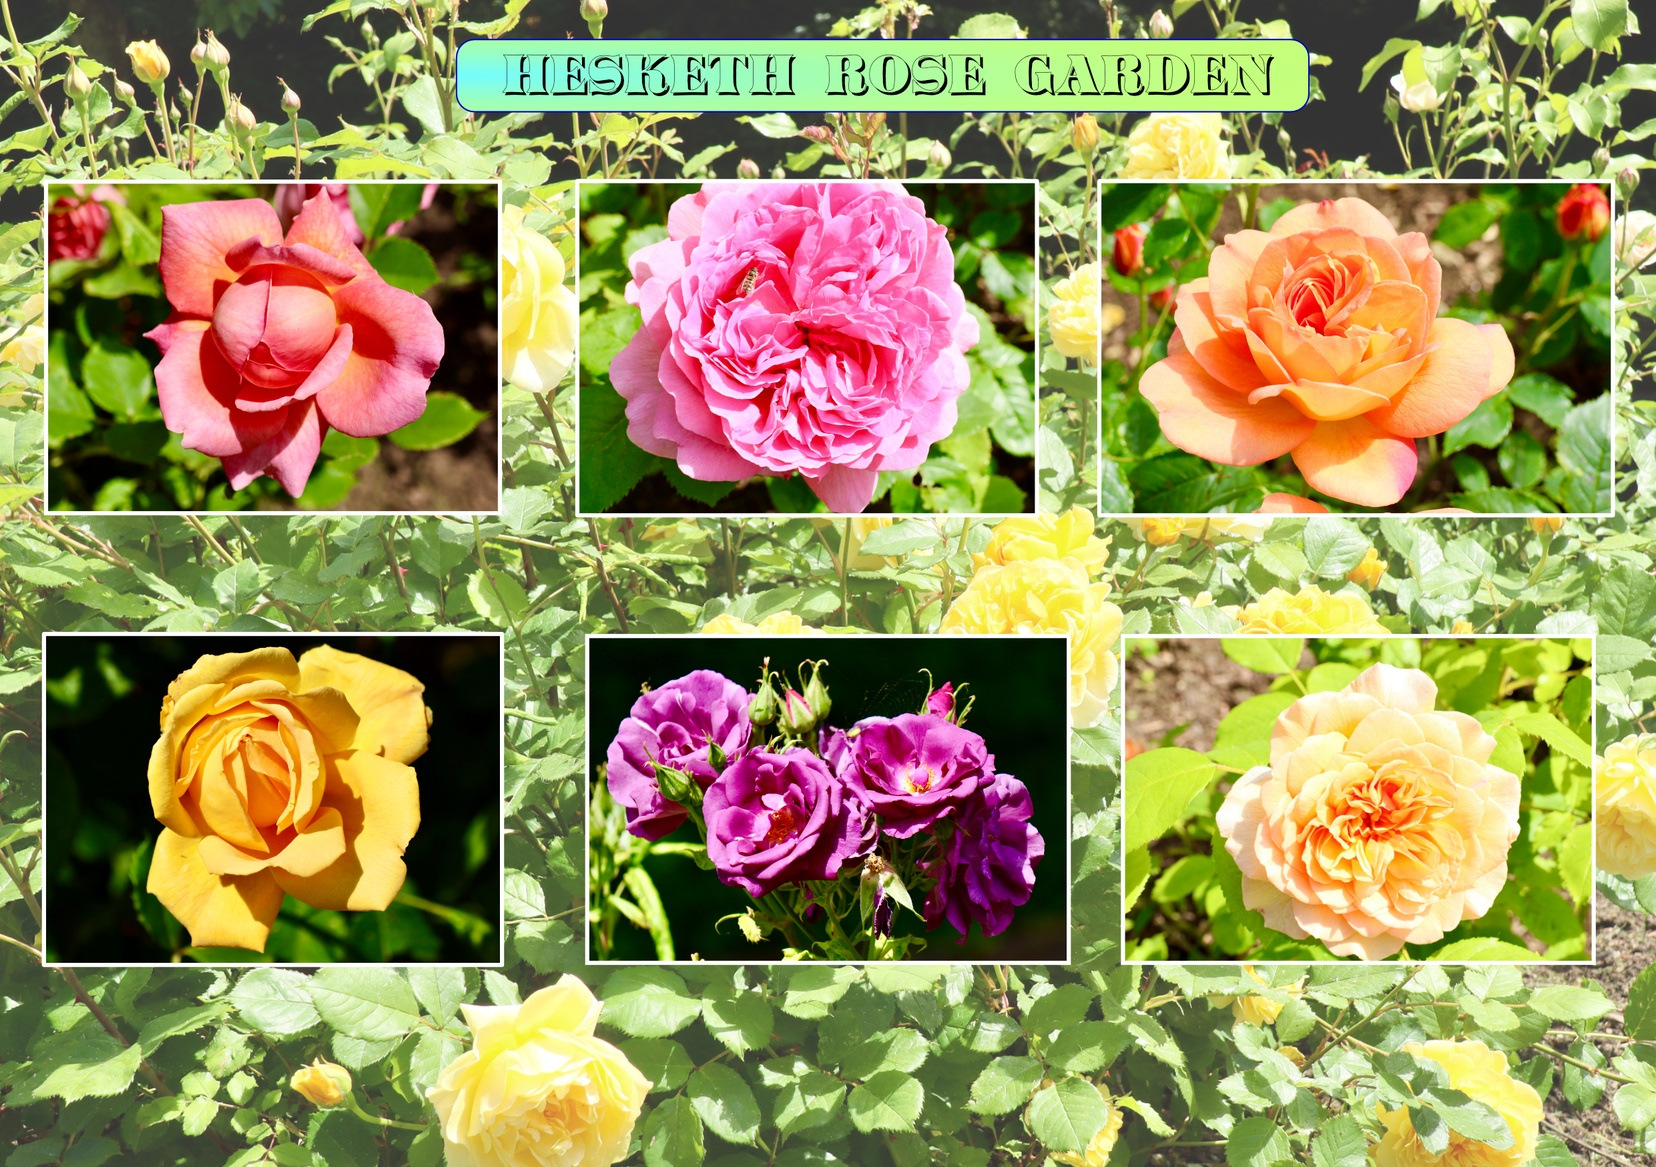 Hesketh rose garden